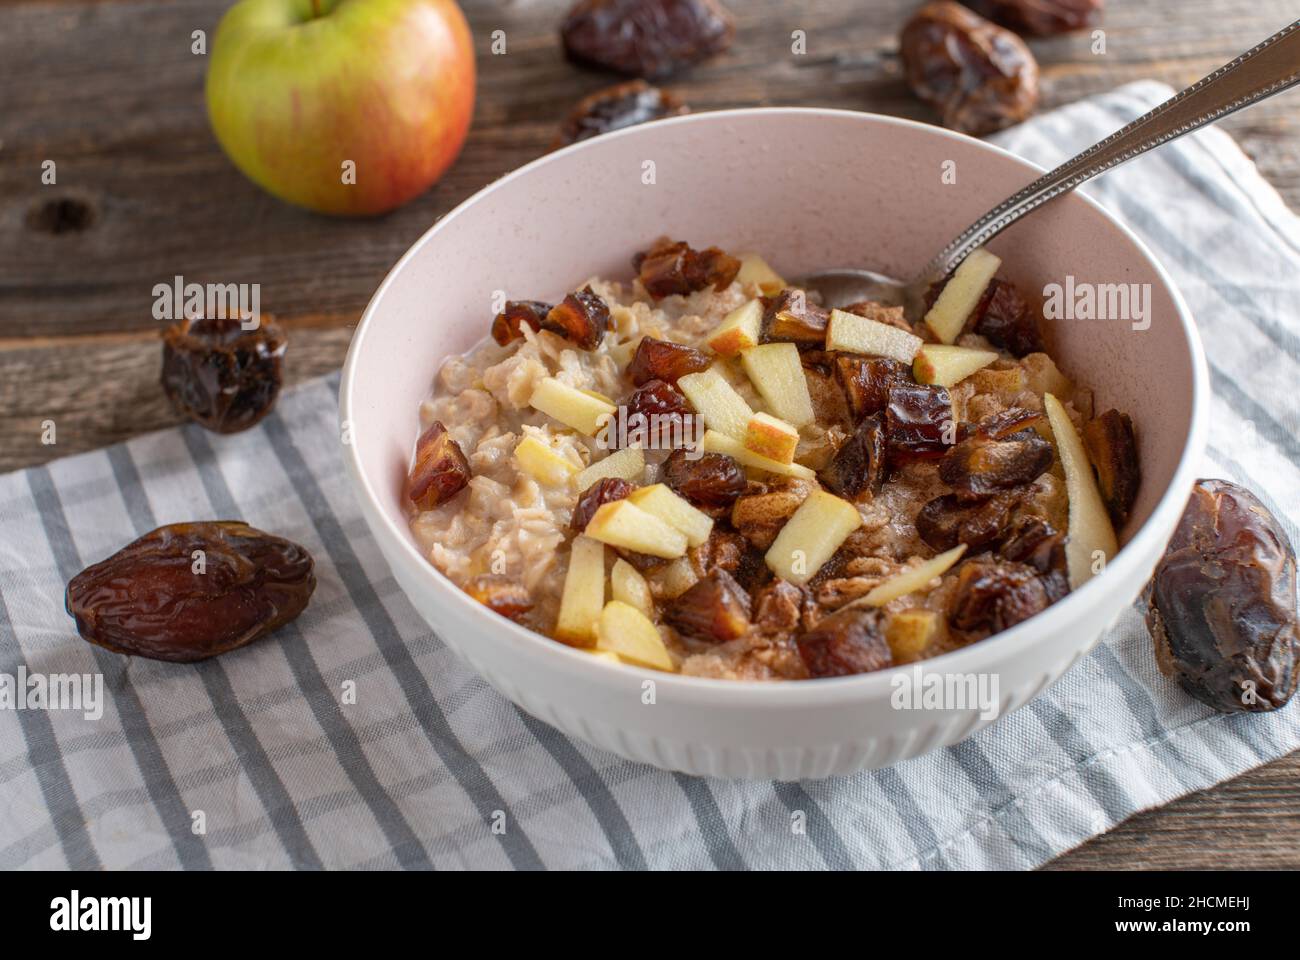 Porridge con mele e datteri di medjool servito in una ciotola con cucchiaio su sfondo rustico e tavola di legno Foto Stock